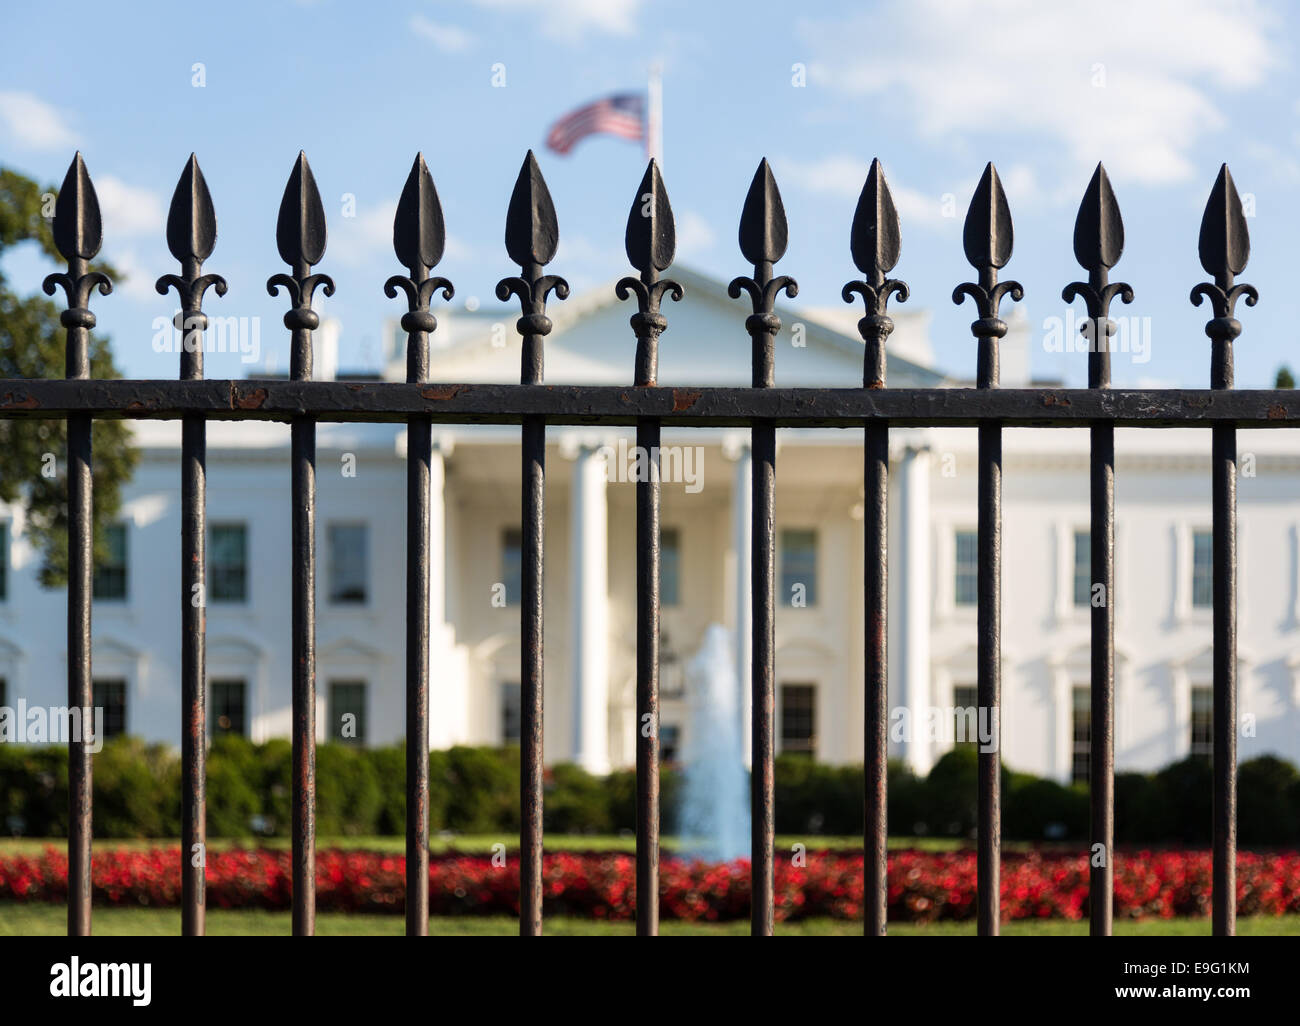 White House Washington DC behind bars Stock Photo